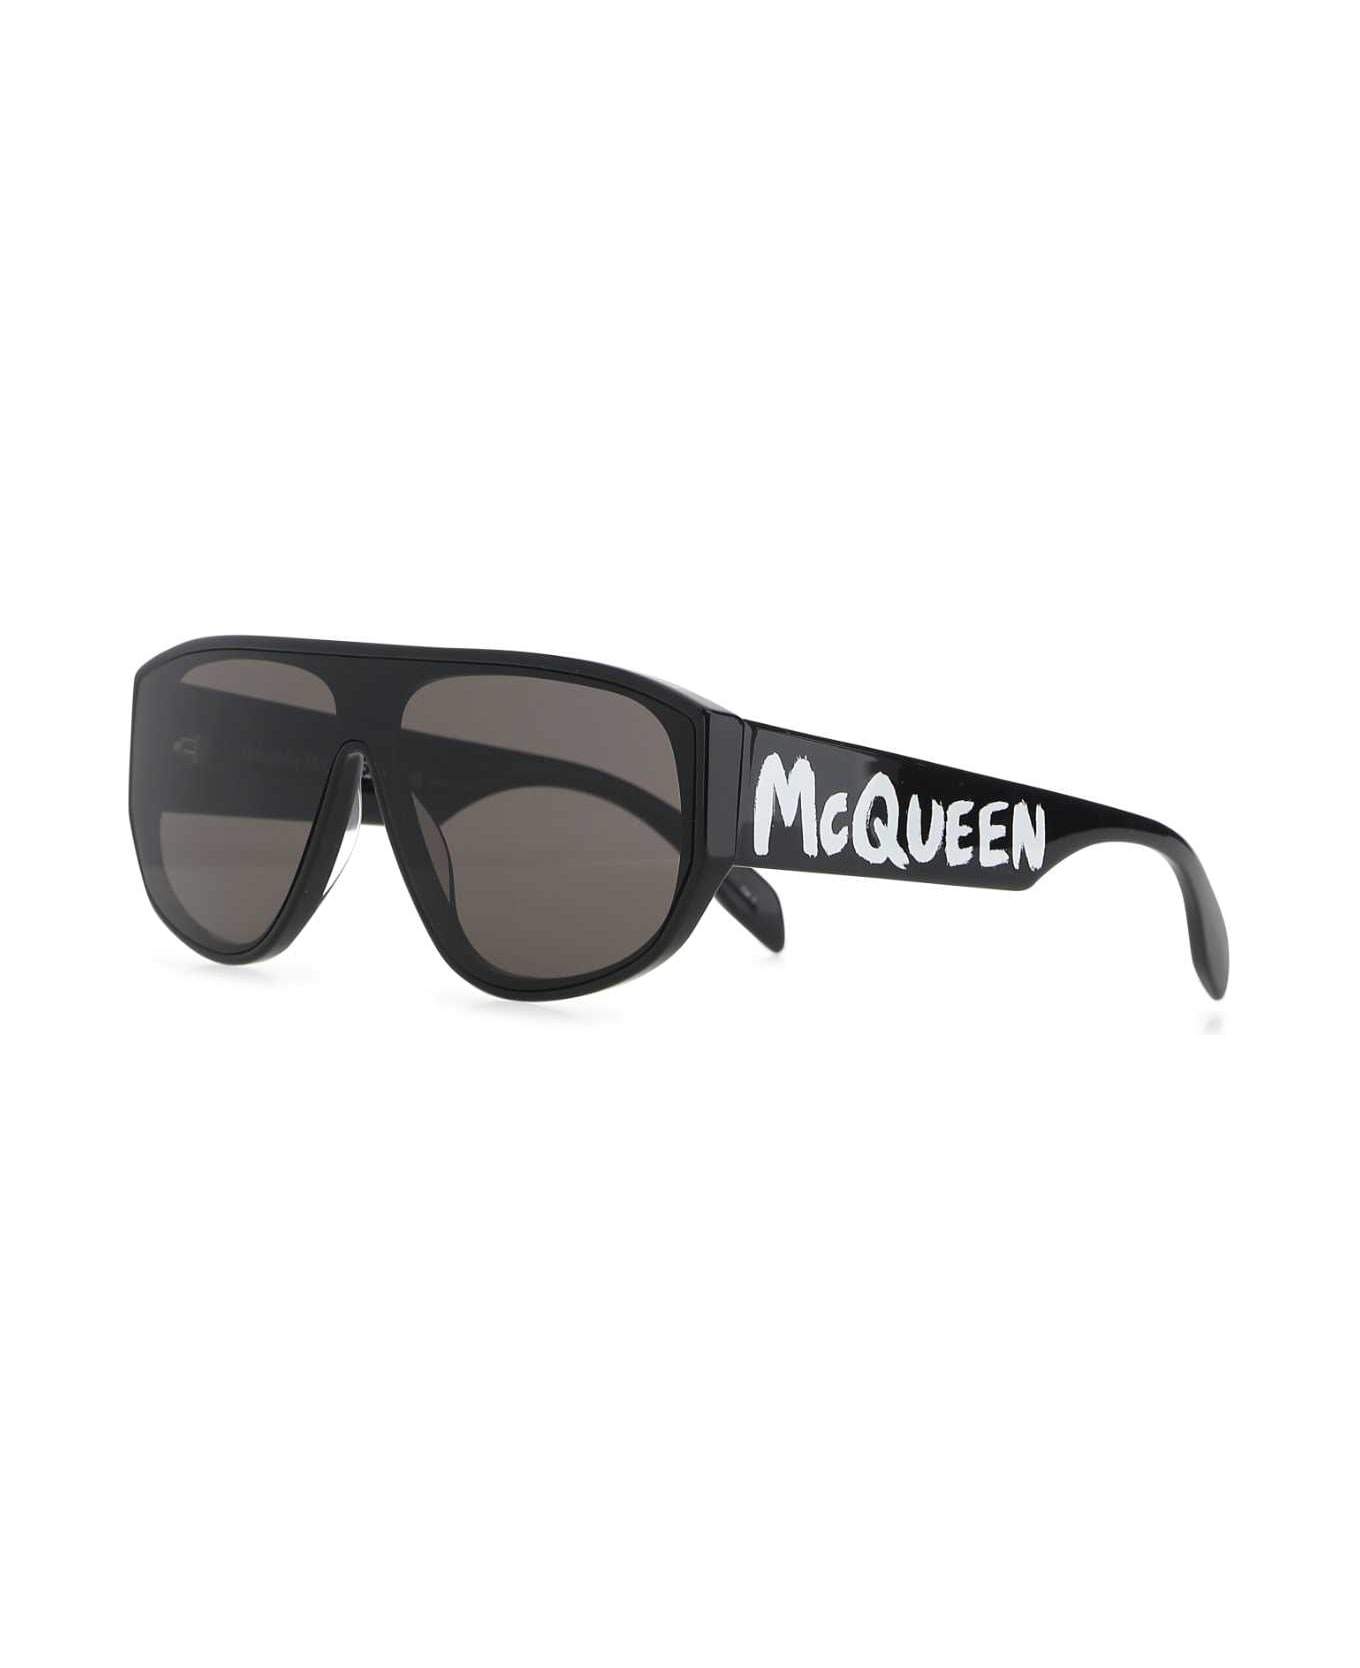 Alexander McQueen Black Acetate Sunglasses - 1056